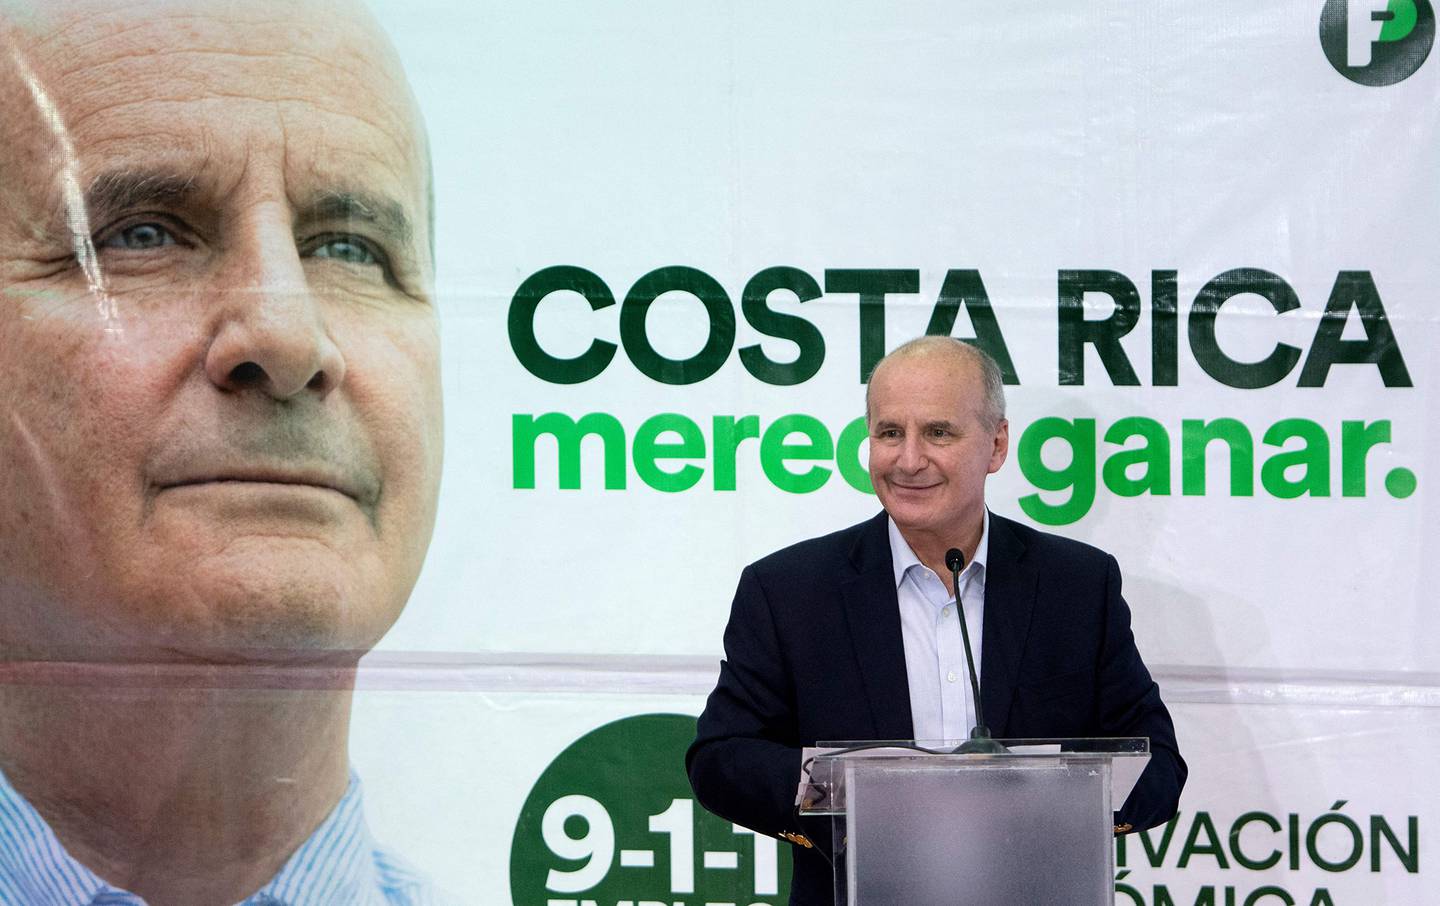 El candidato a la presidencia de Costa Rica por el Partido Liberación Nacional (PLN), José María Figueres, durante un acto de campaña en San José